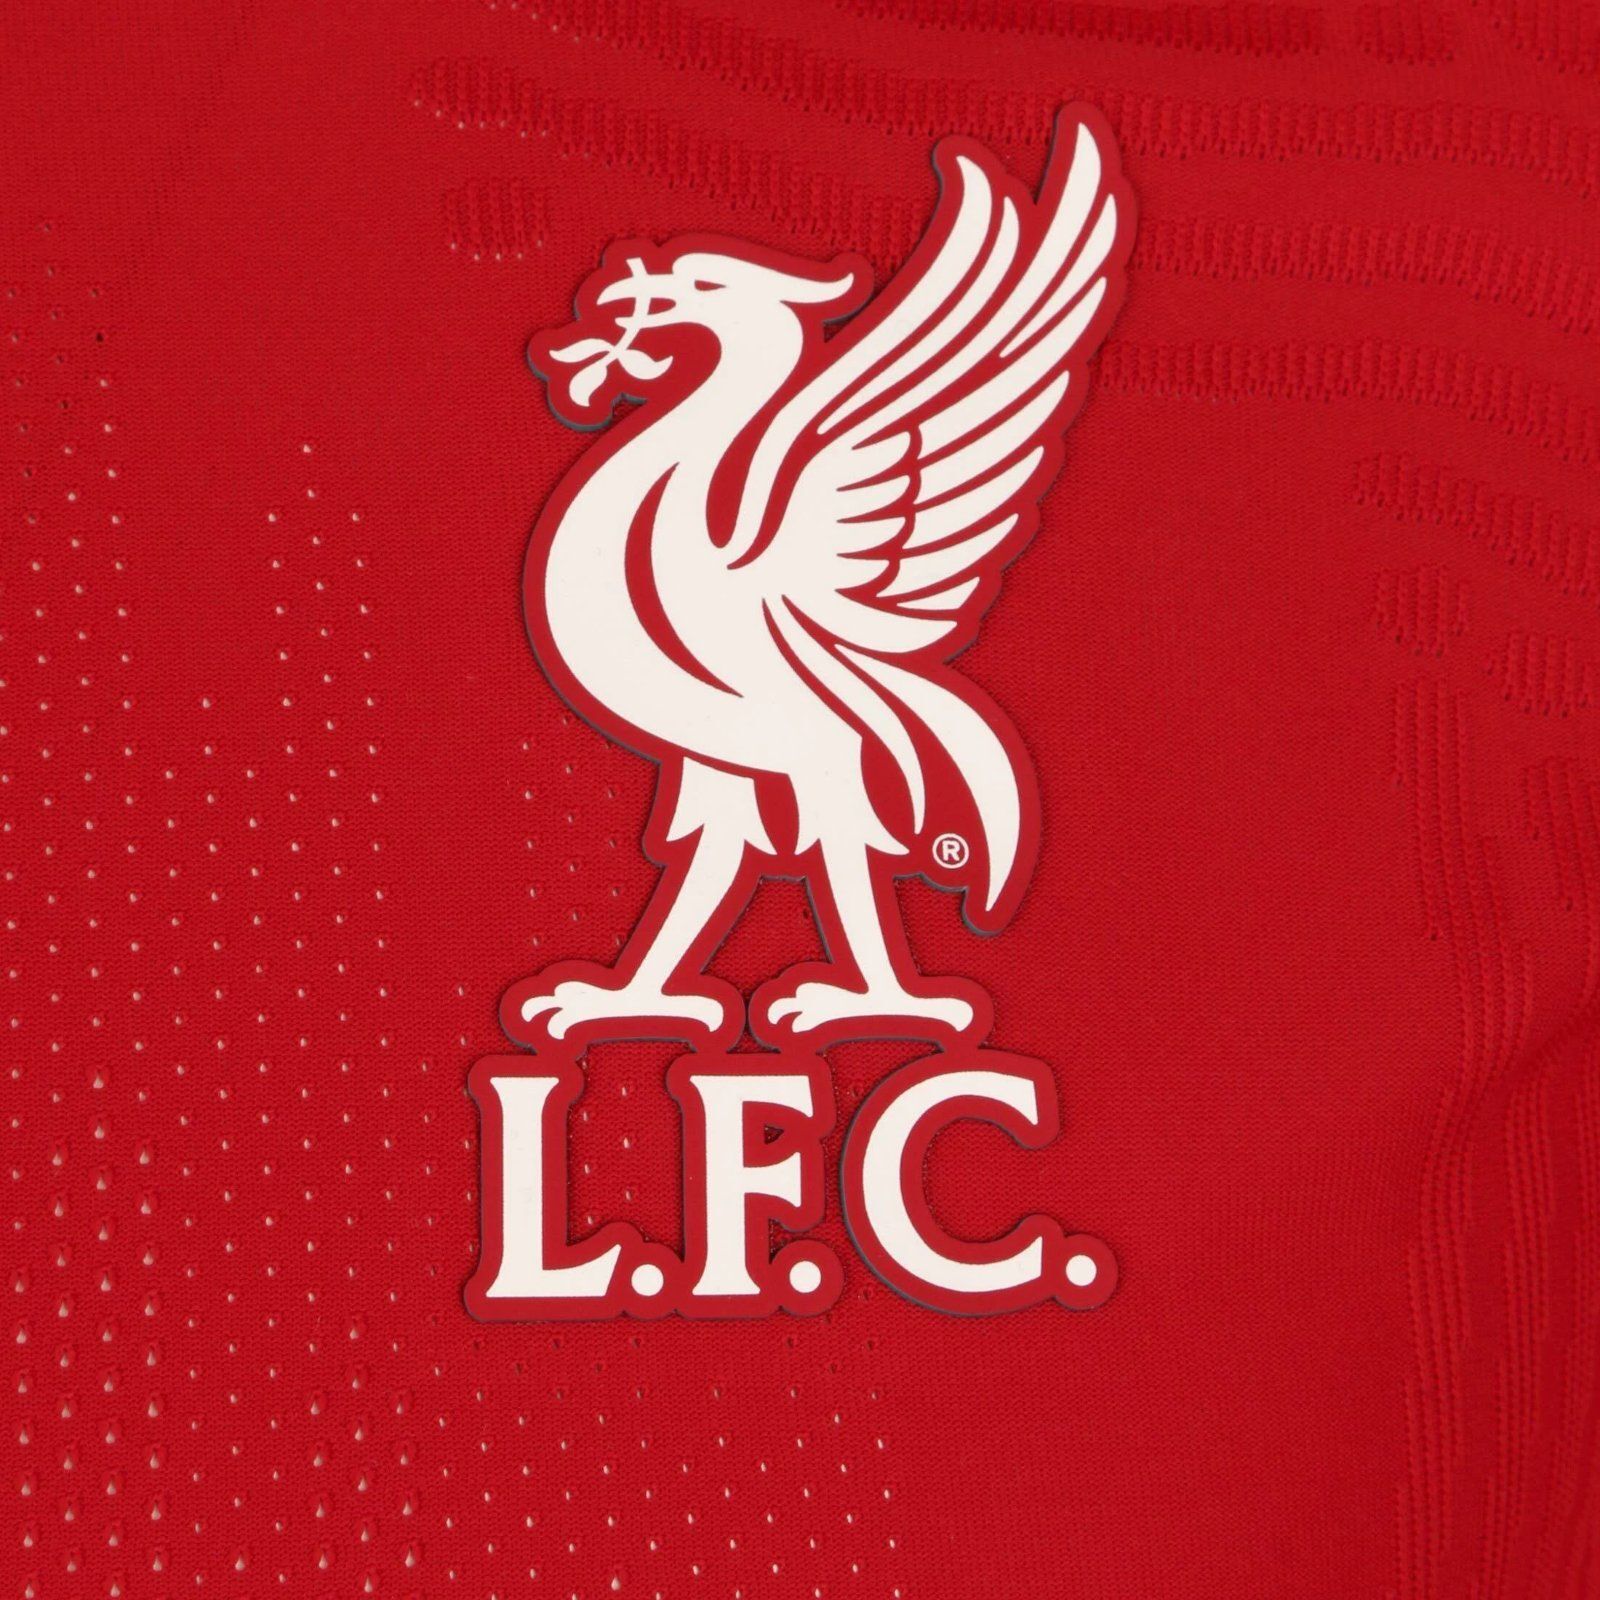 Liverpool FC thuisshirt seizoen 2020/2021